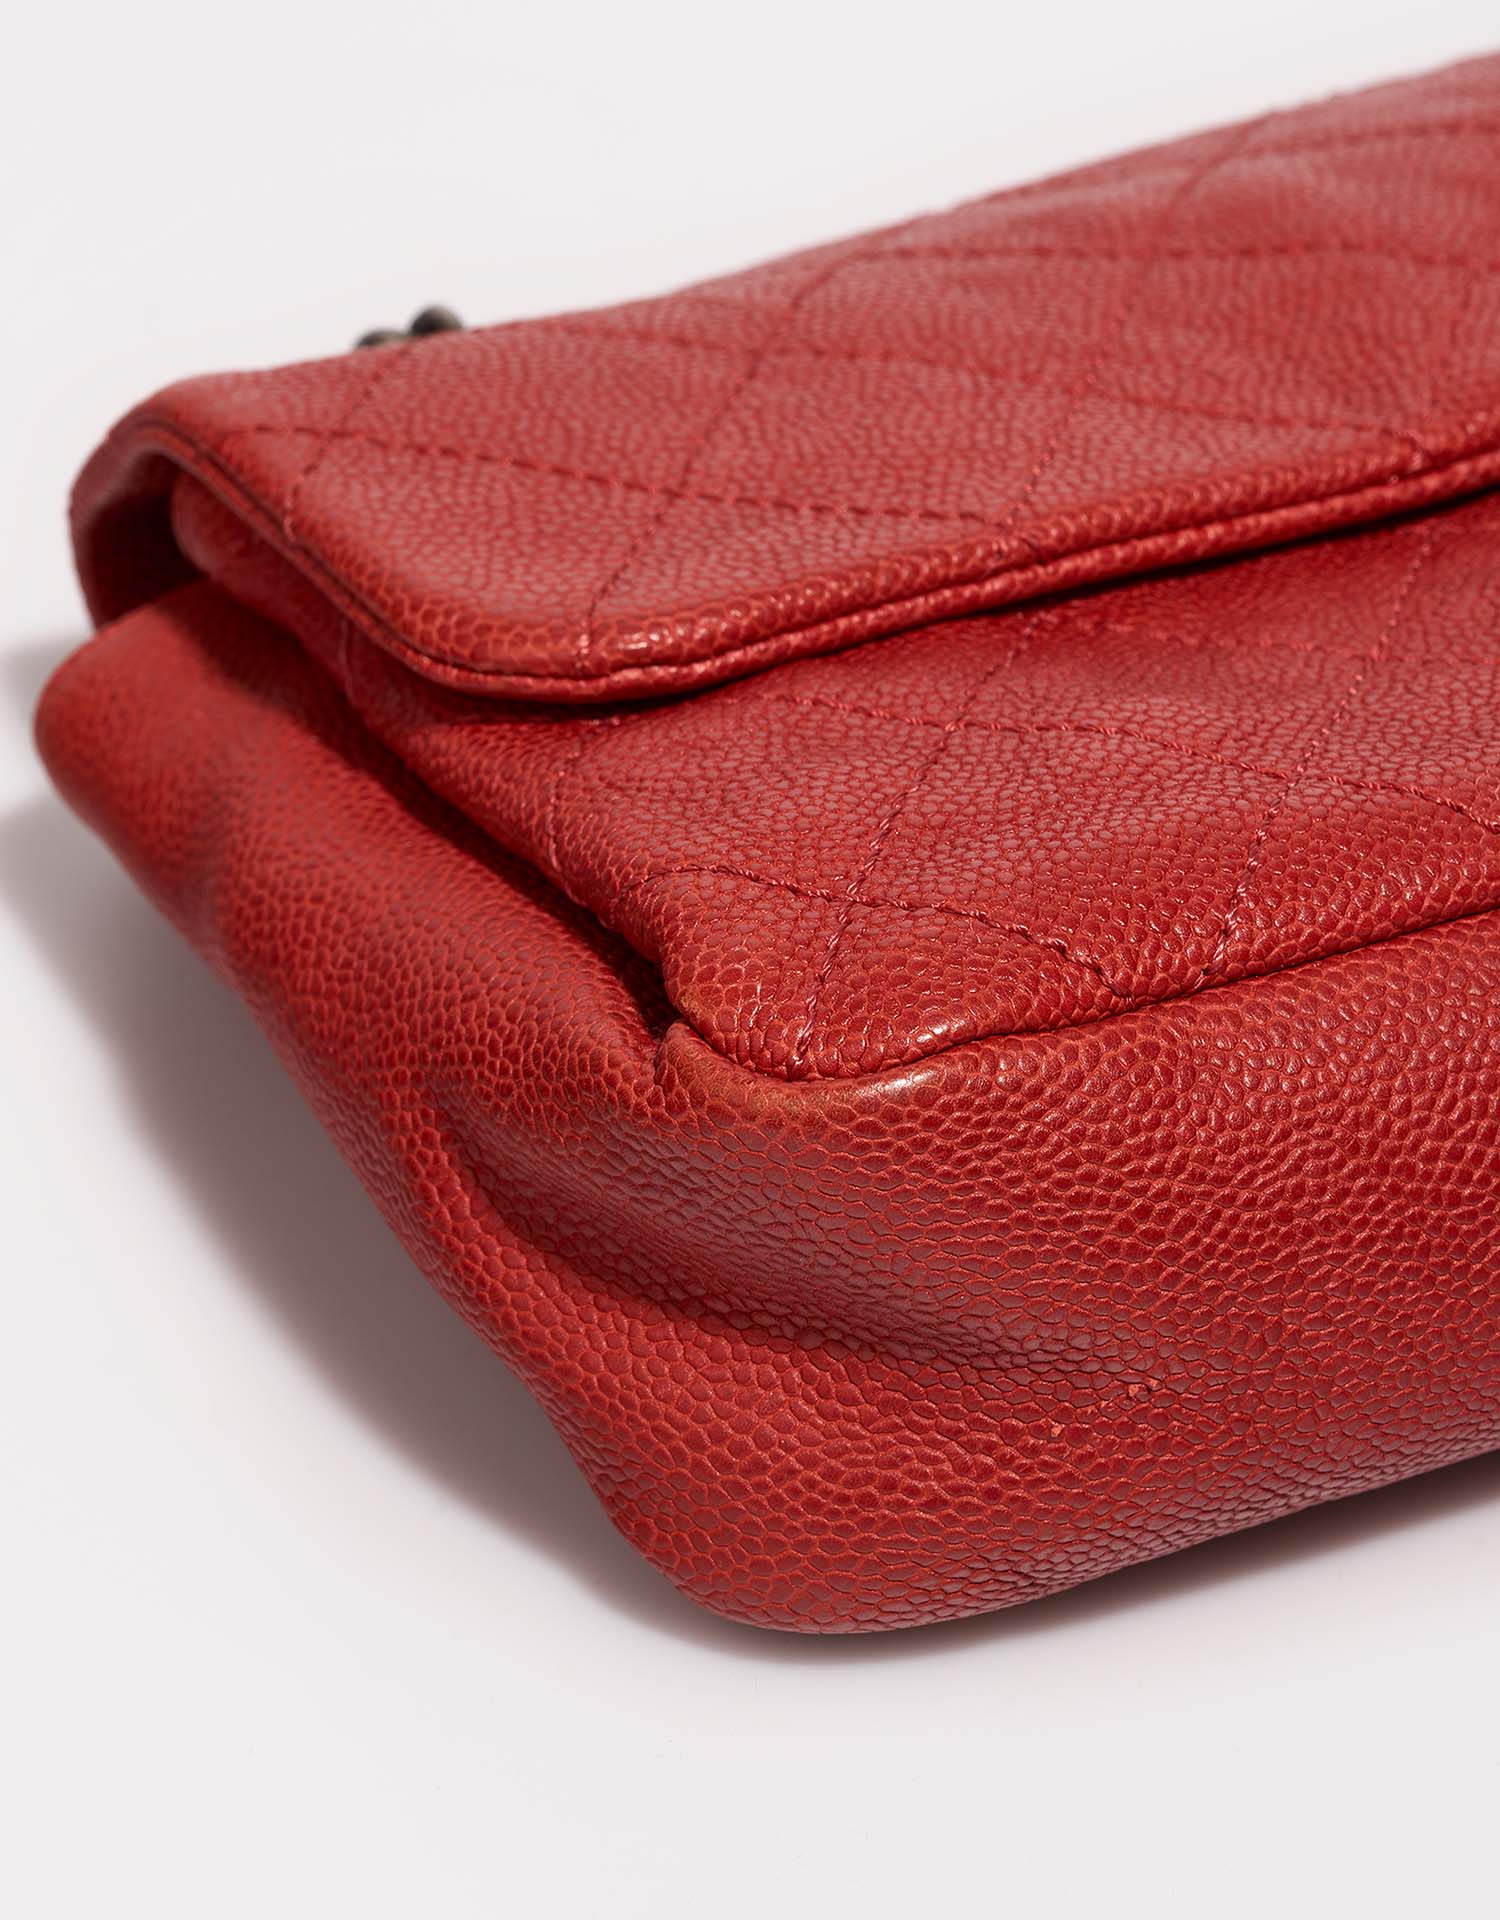 Chanel Timeless Medium Rouge signes d'usure | Vendez votre sac de créateur sur Saclab.com